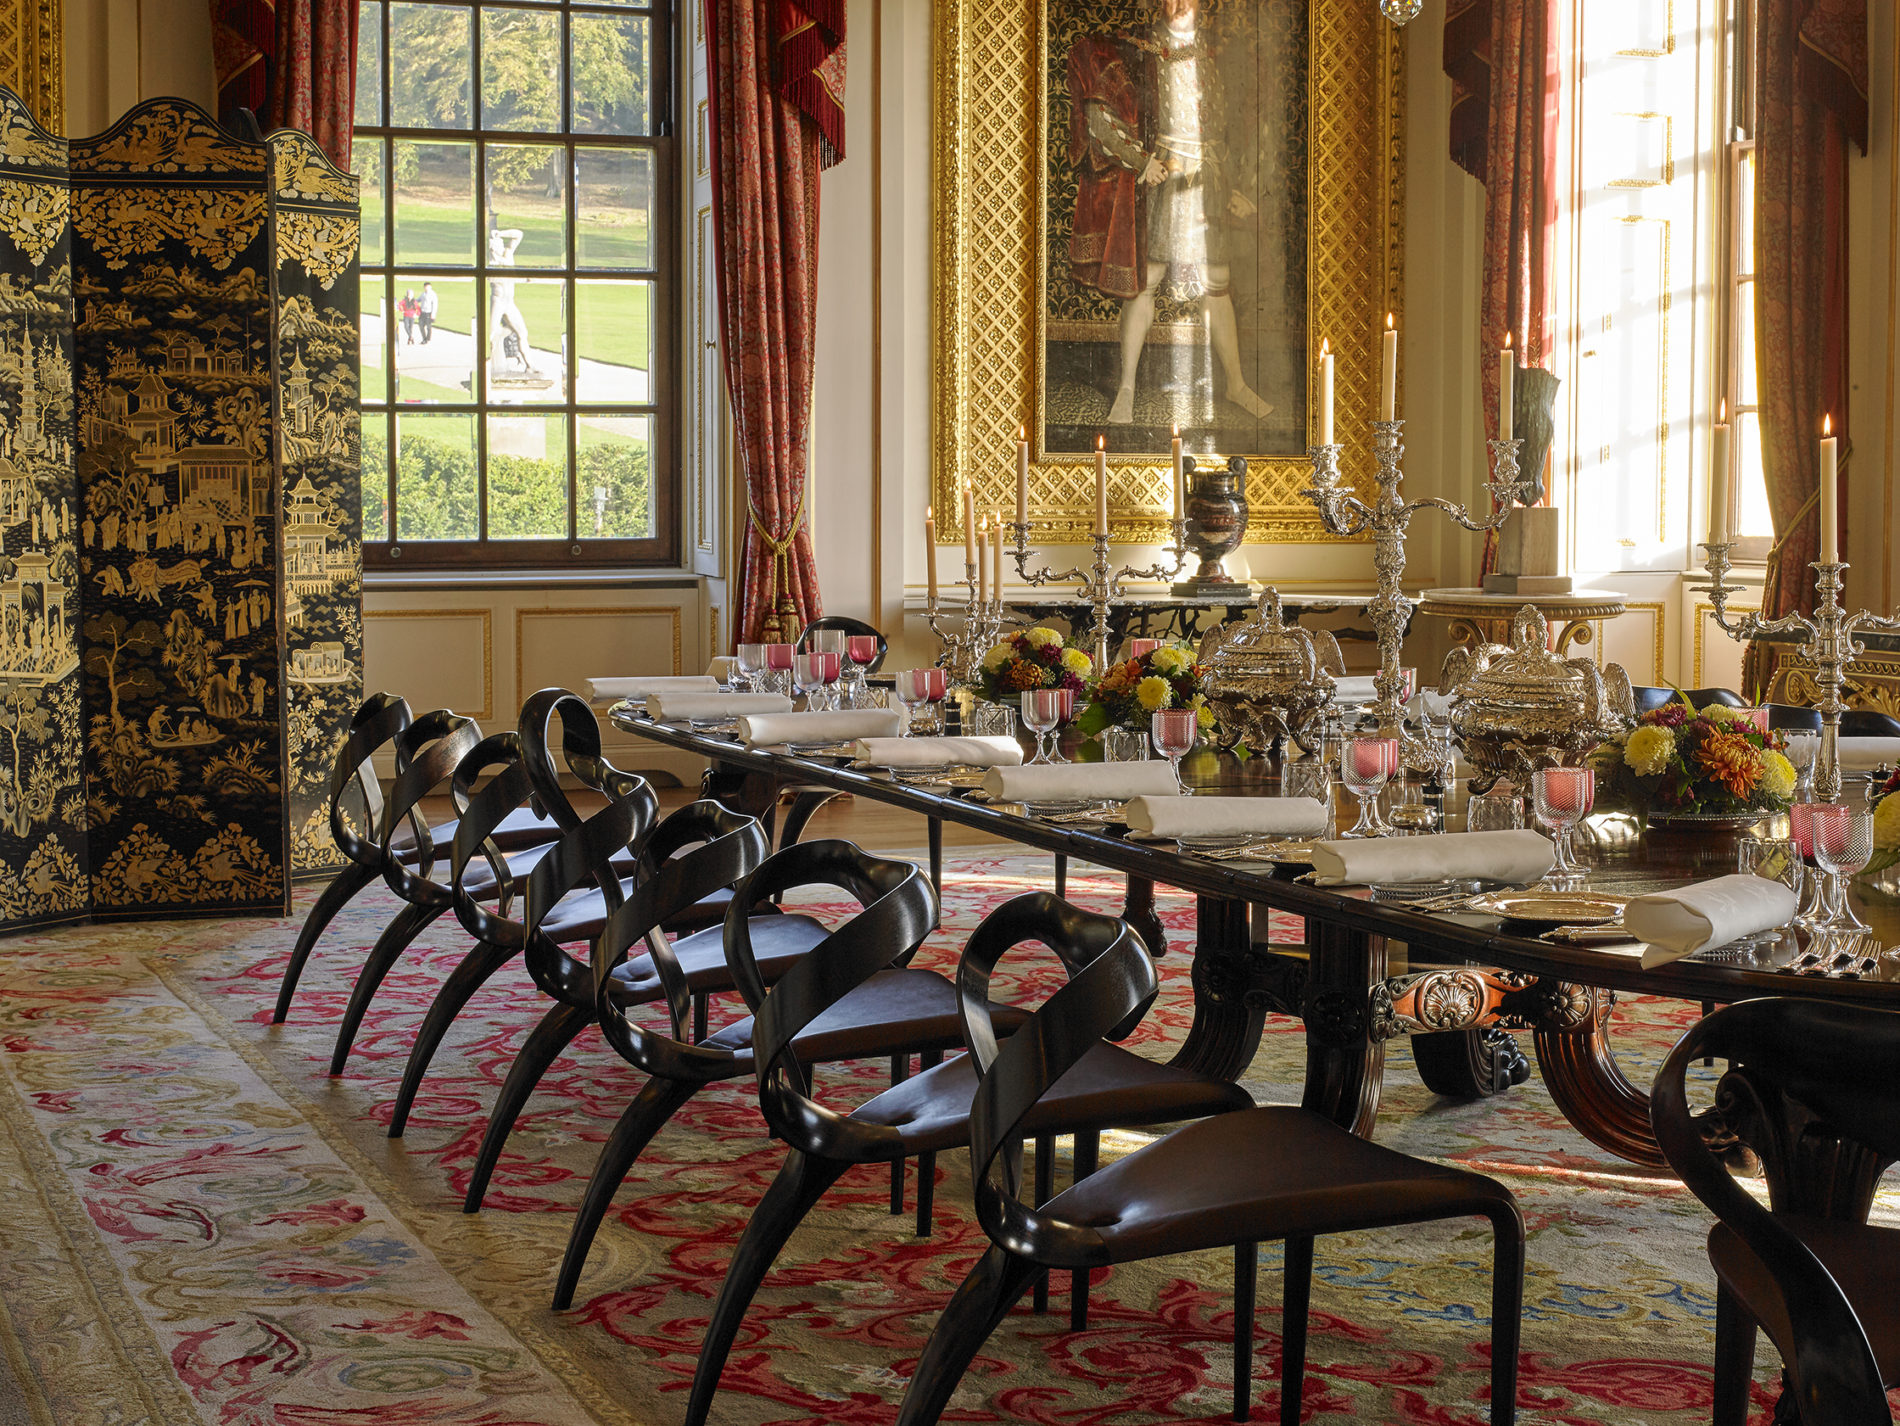 Anh đã thiết kế cho Công tước và Nữ công tước xứ Devonshire một chiếc bàn gỗ và hai mươi chiếc ghế cho phòng ăn tại ngôi nhà tổ tiên mang tính biểu tượng của họ - Chatsworth House.